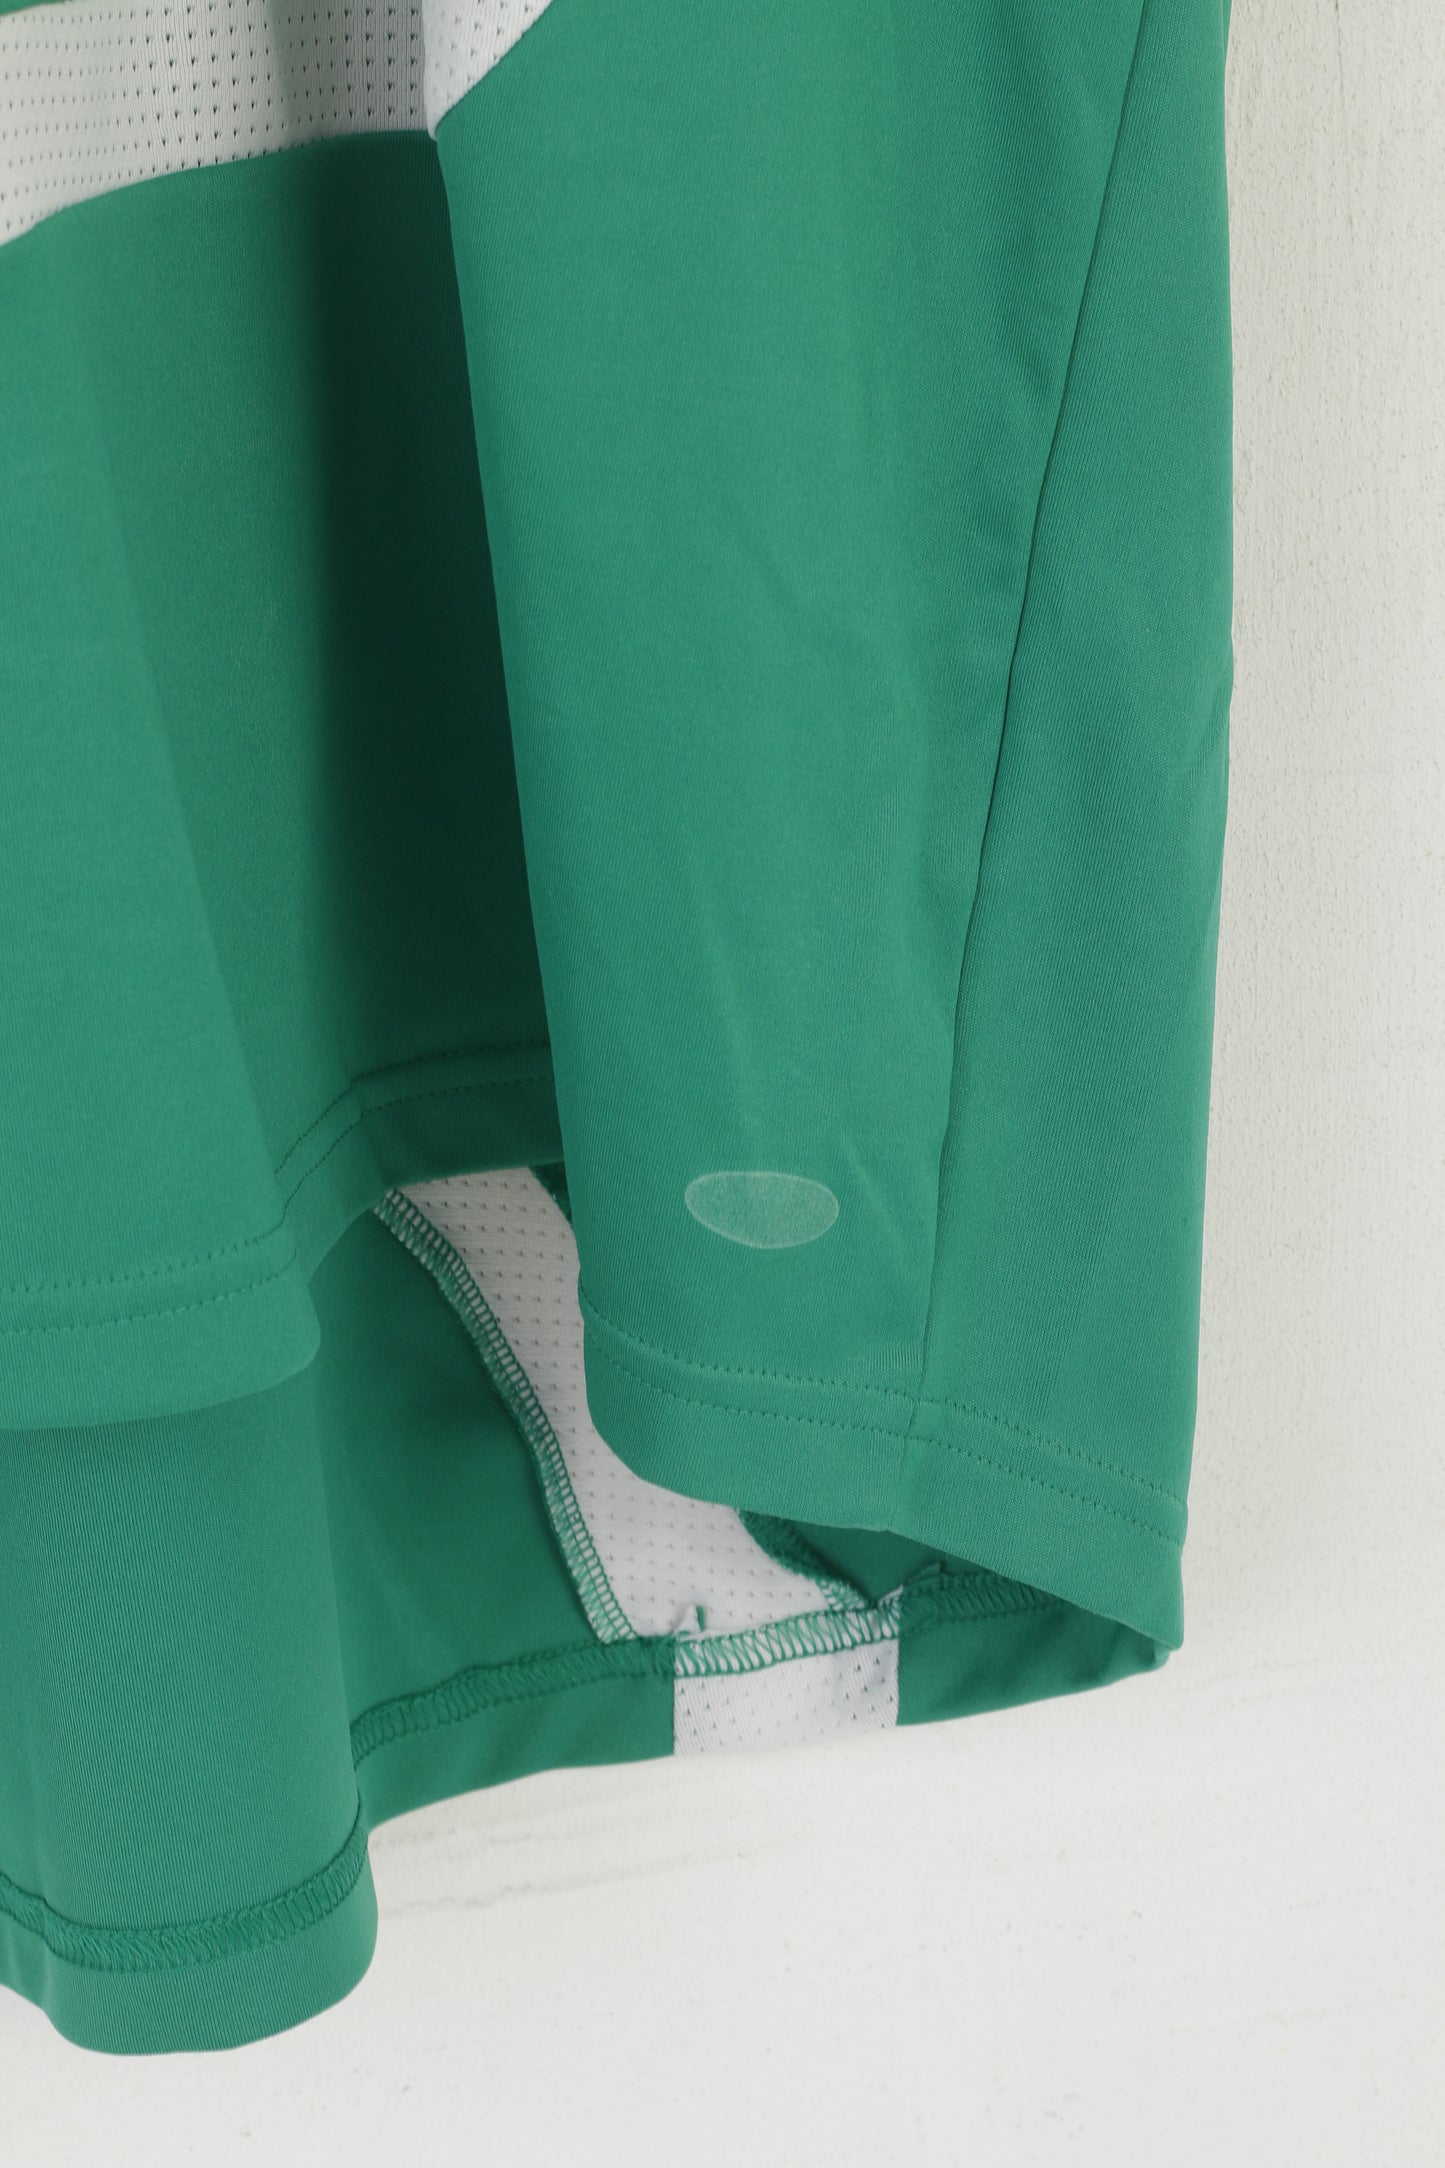 Maglia Adidas da uomo XXL verde lucido vintage sportivo in jersey top da allenamento